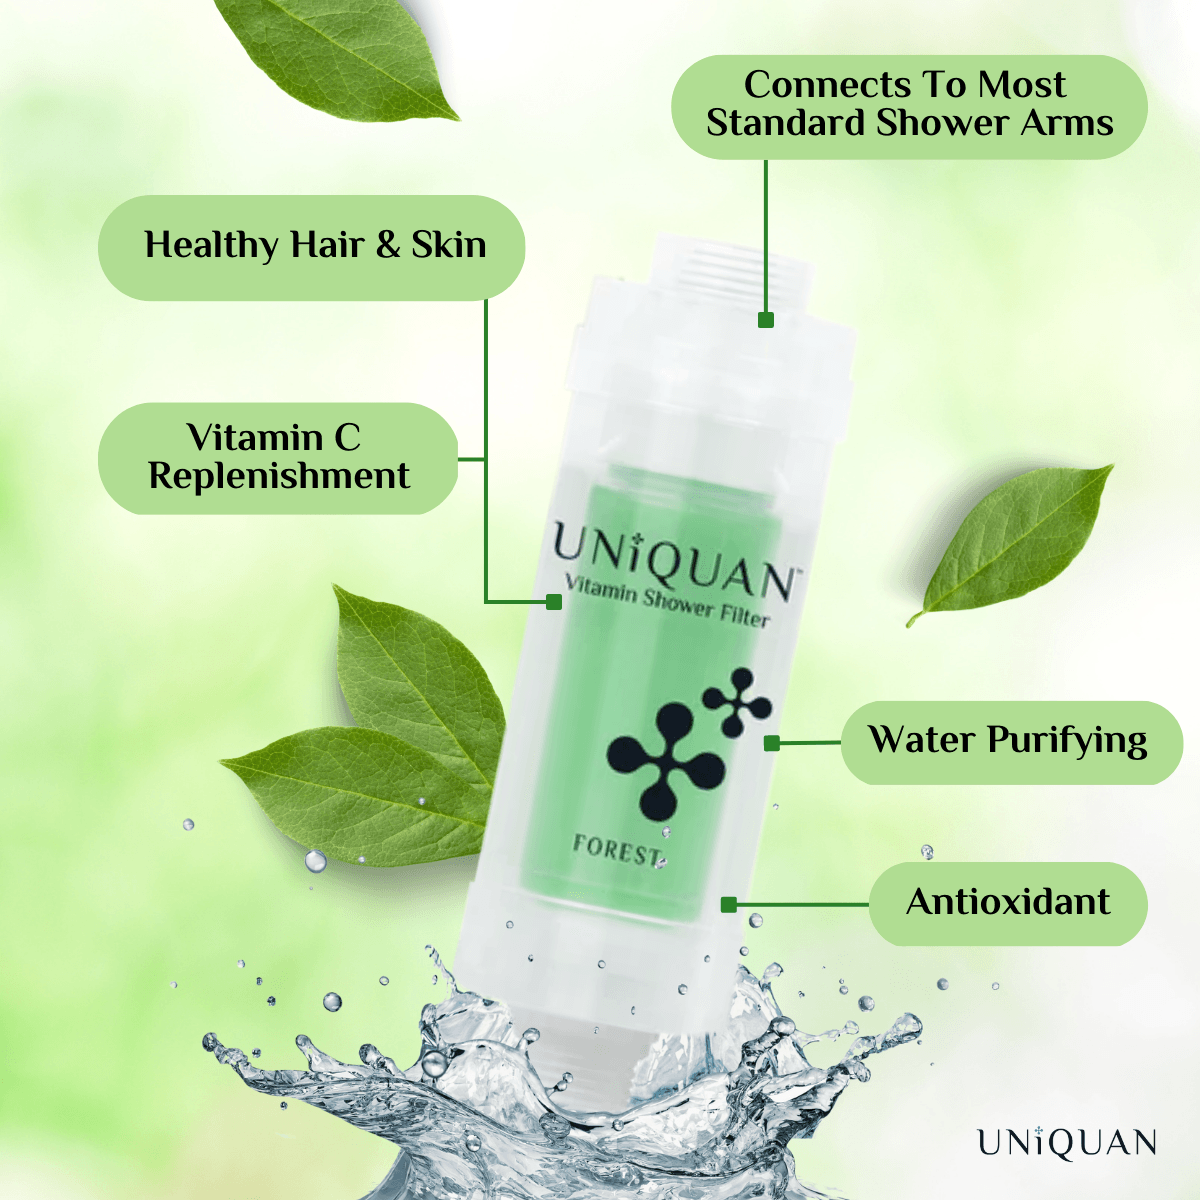 Uniquan Vitamin Shower Filter - Forest - UShops